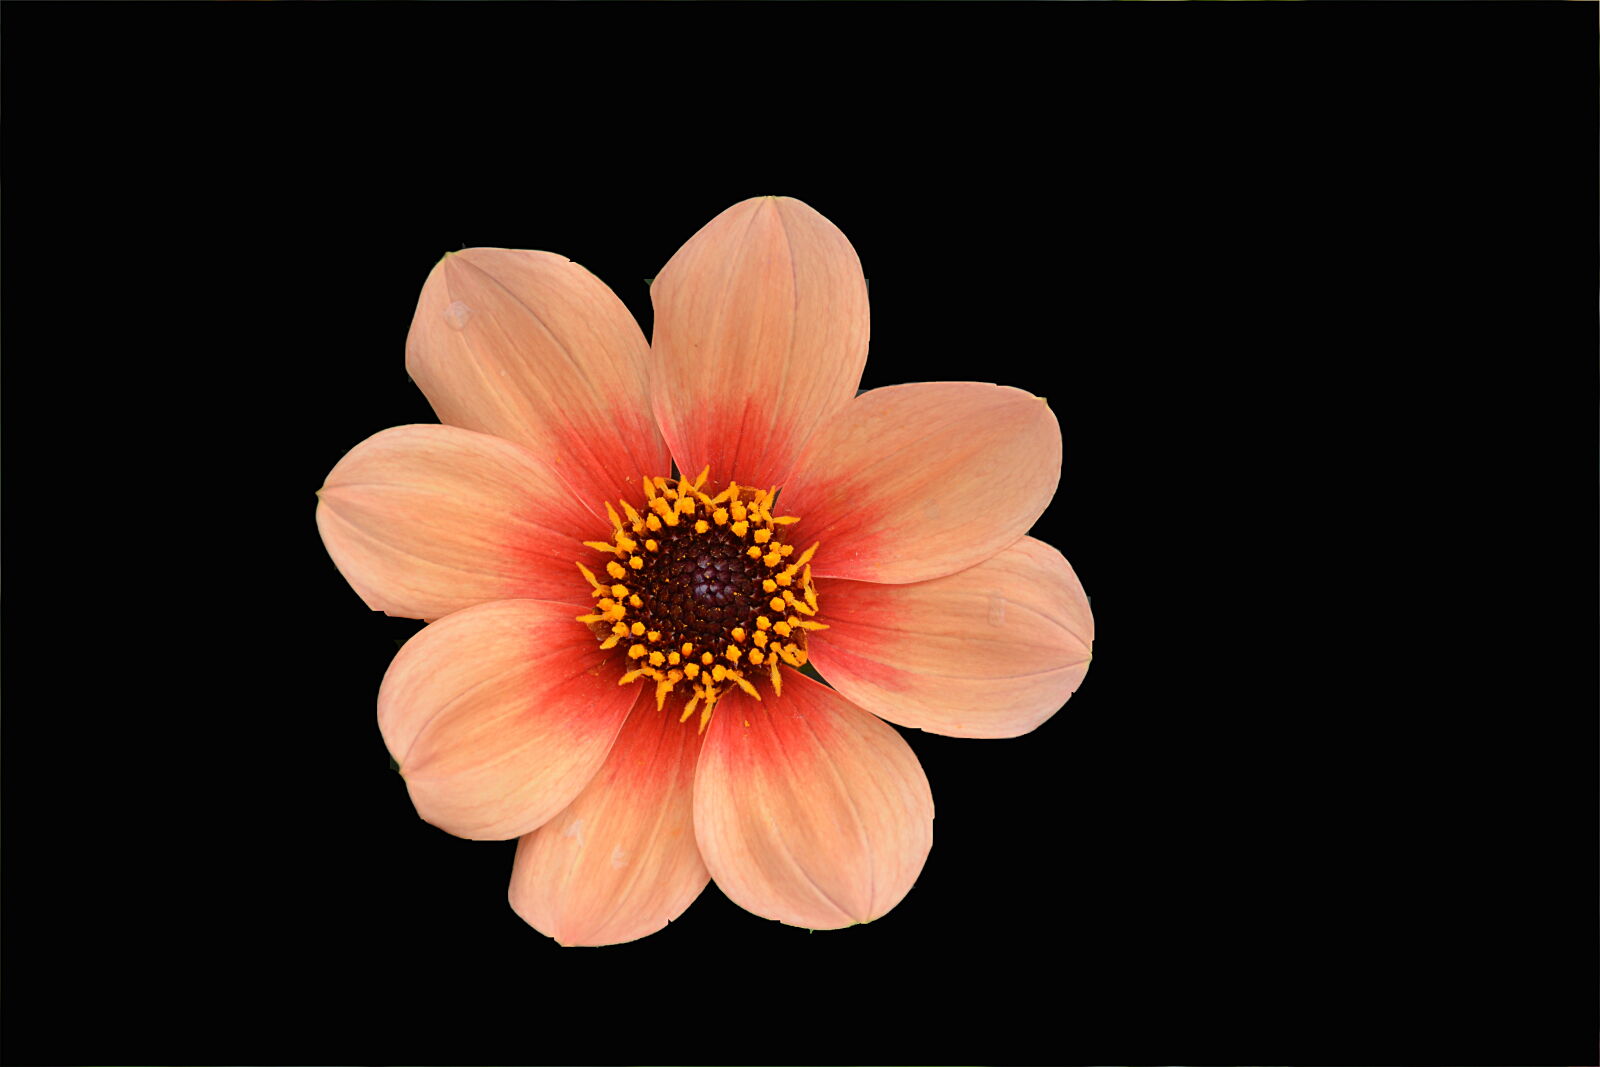 Nikon D5200 + Sigma 18-250mm F3.5-6.3 DC Macro OS HSM sample photo. Botanique, fleur, floraison, flore photography